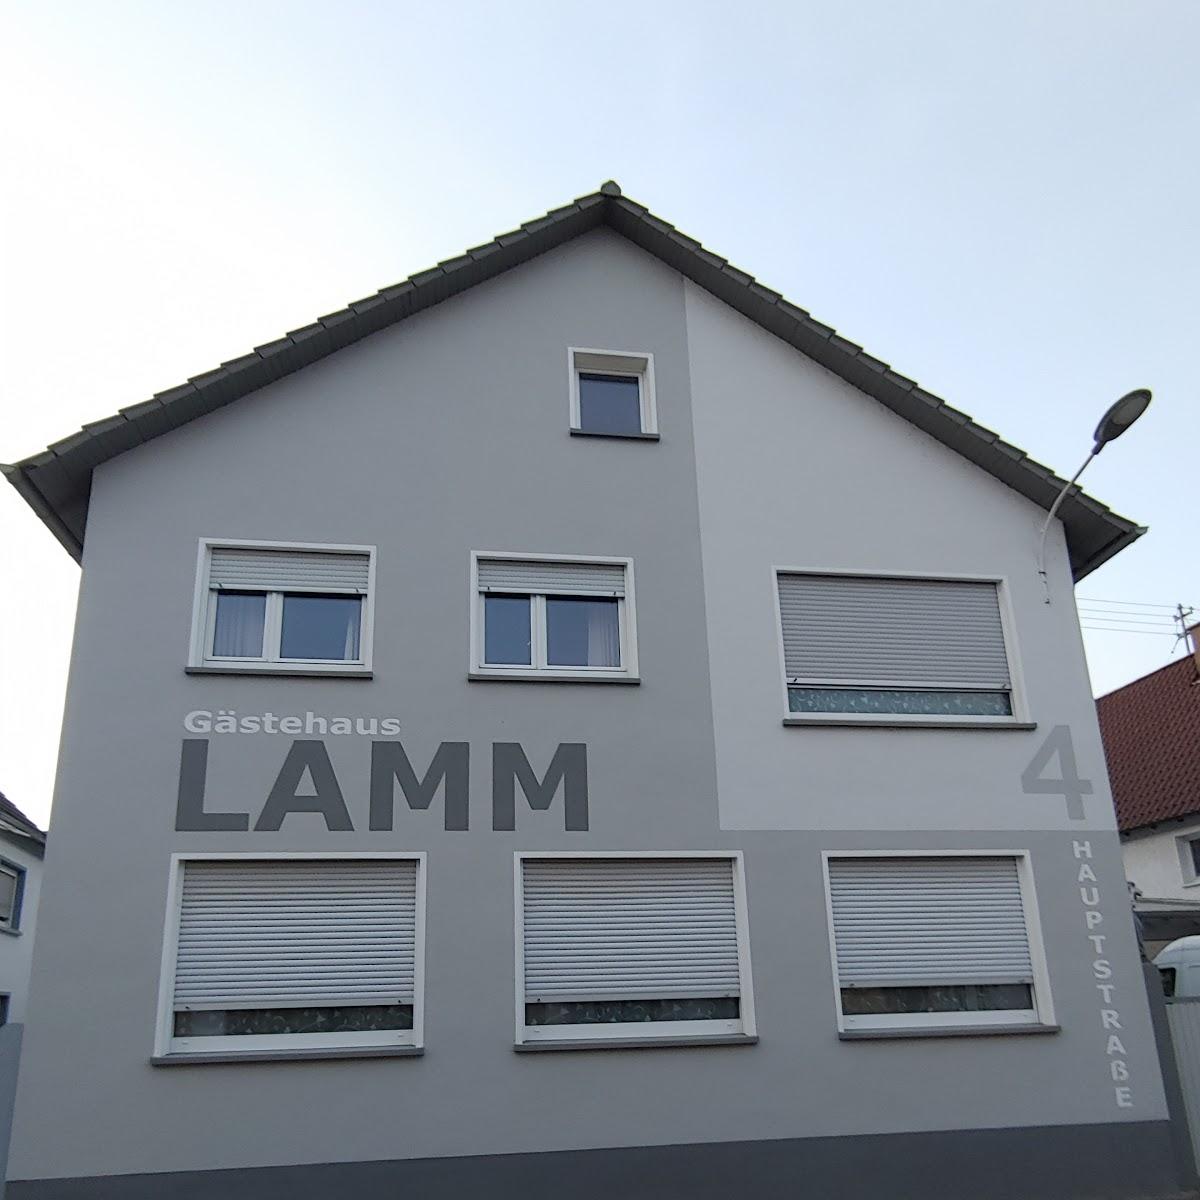 Restaurant "Gästehaus Lamm" in Kuhardt